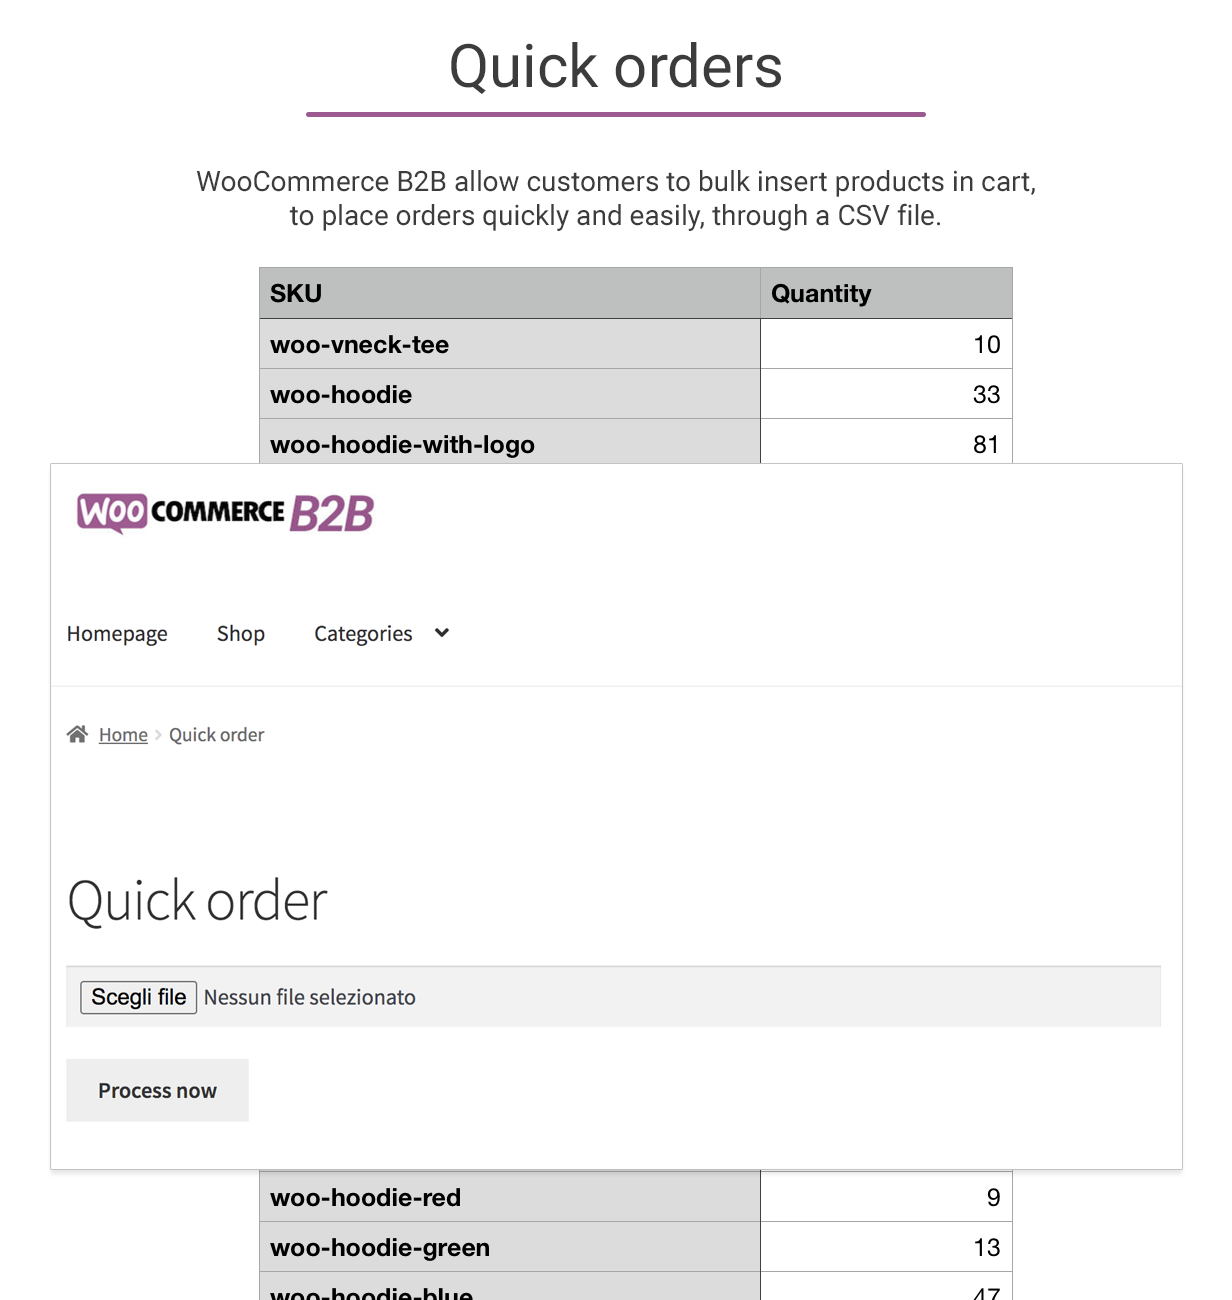 WooCommerce B2B - Quick orders